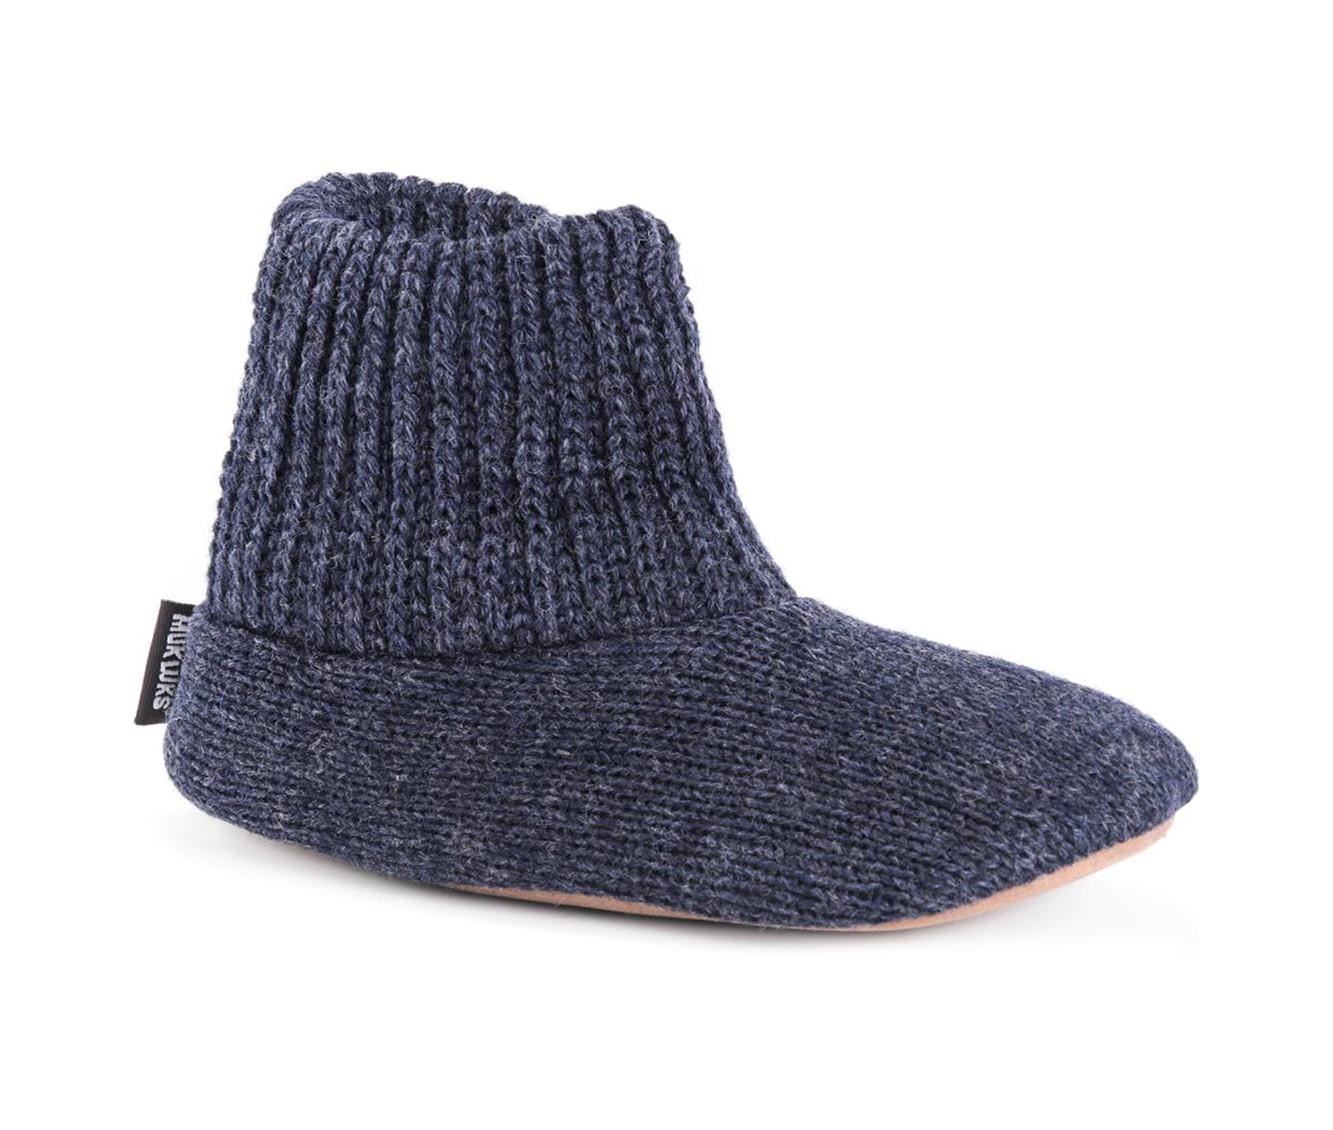 MUK LUKS Men's Morty Ragg Wool Slipper Sock